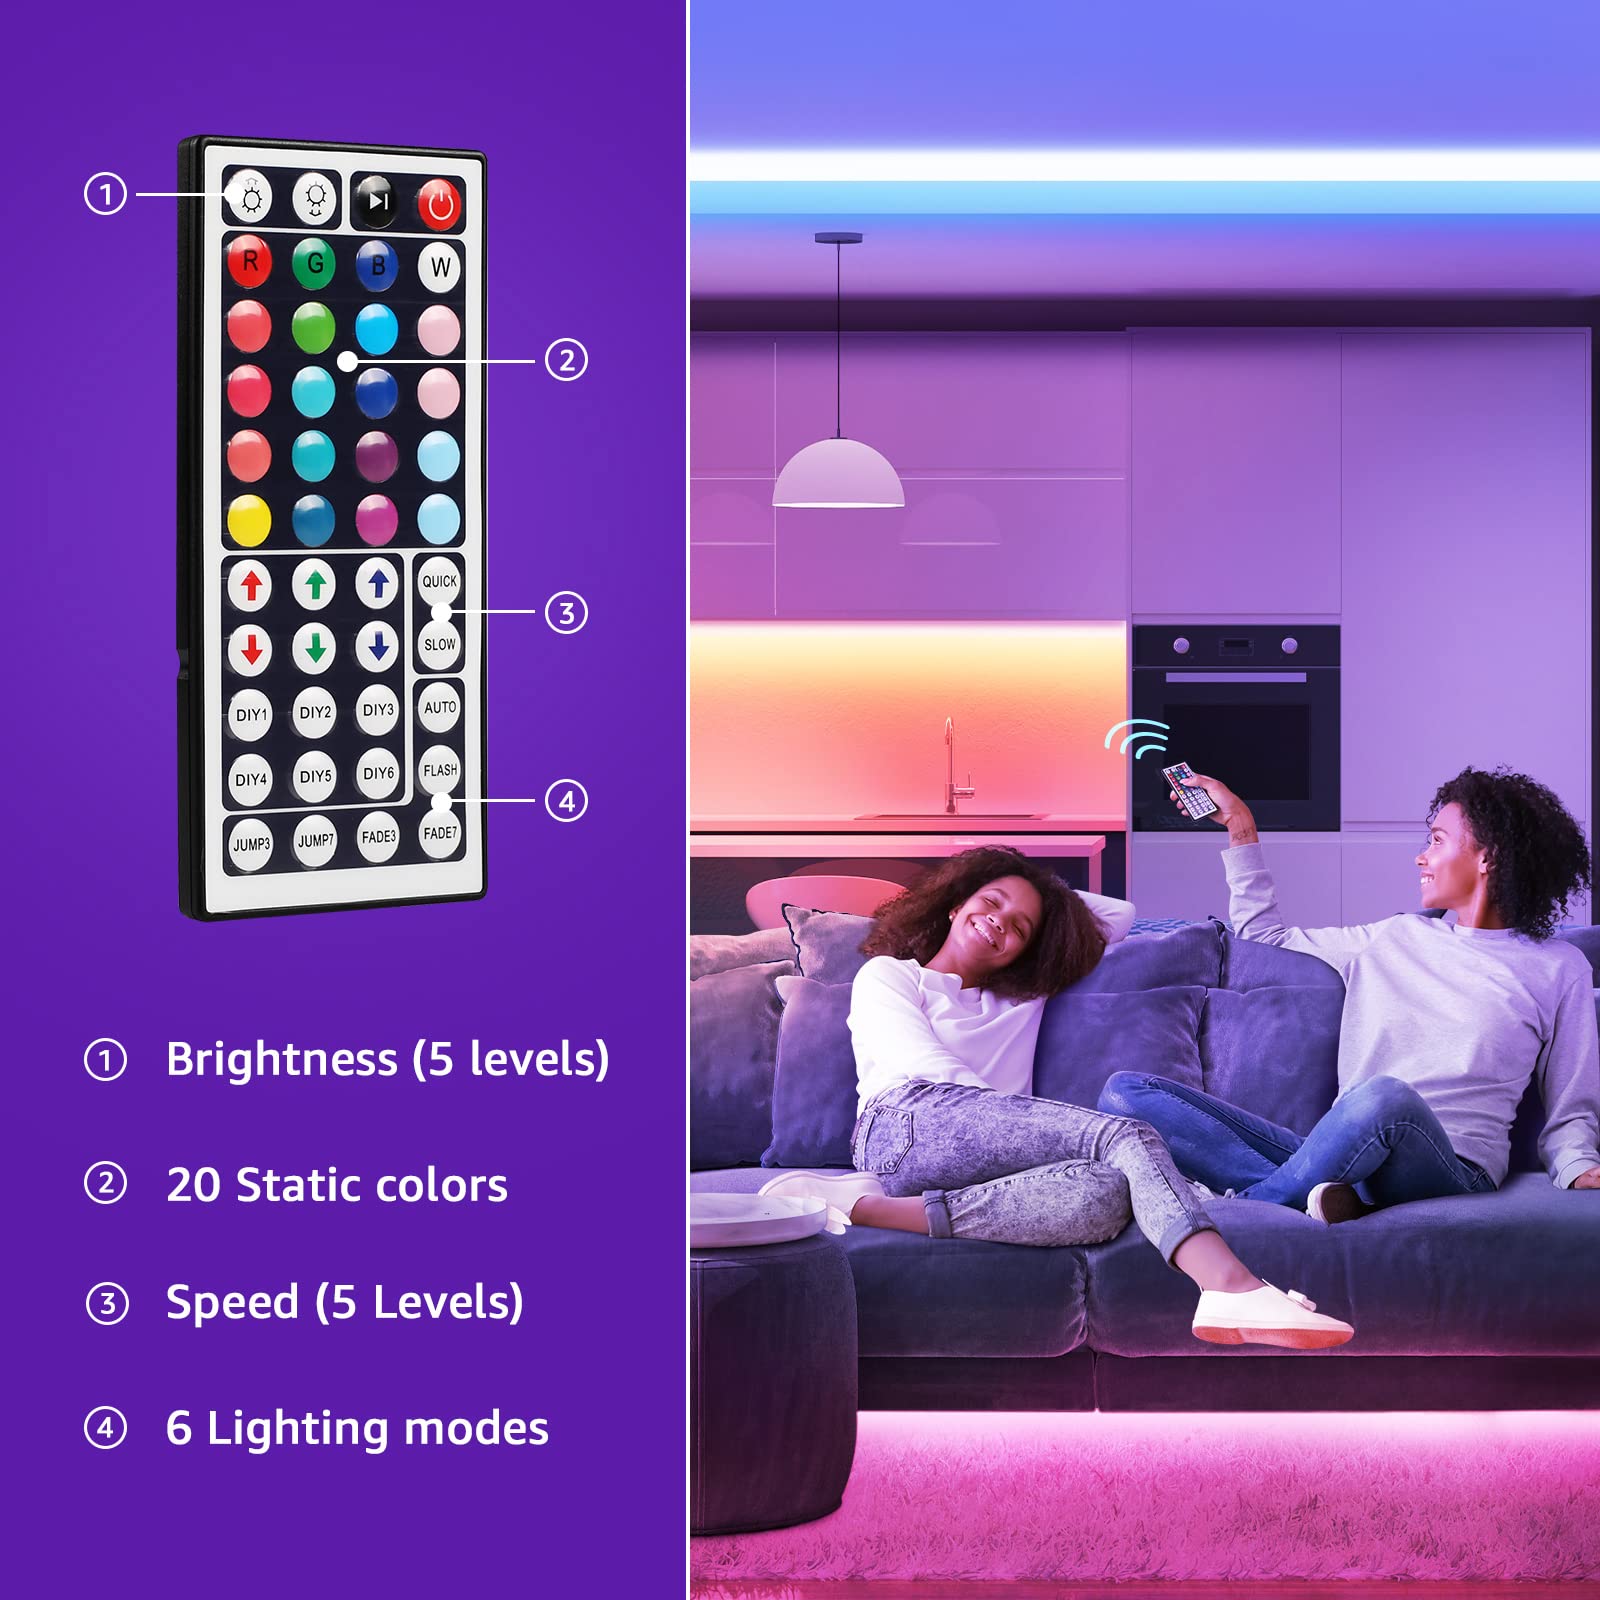 Lepro LED Lights for Bedroom 32.8ft, RGB LED Light Strips, 5050 LED Color Changing Tape Light with 44 Key Remote and 12V Power Supply, LED Lights for Room, TV Backlight, Kitchen, Bar